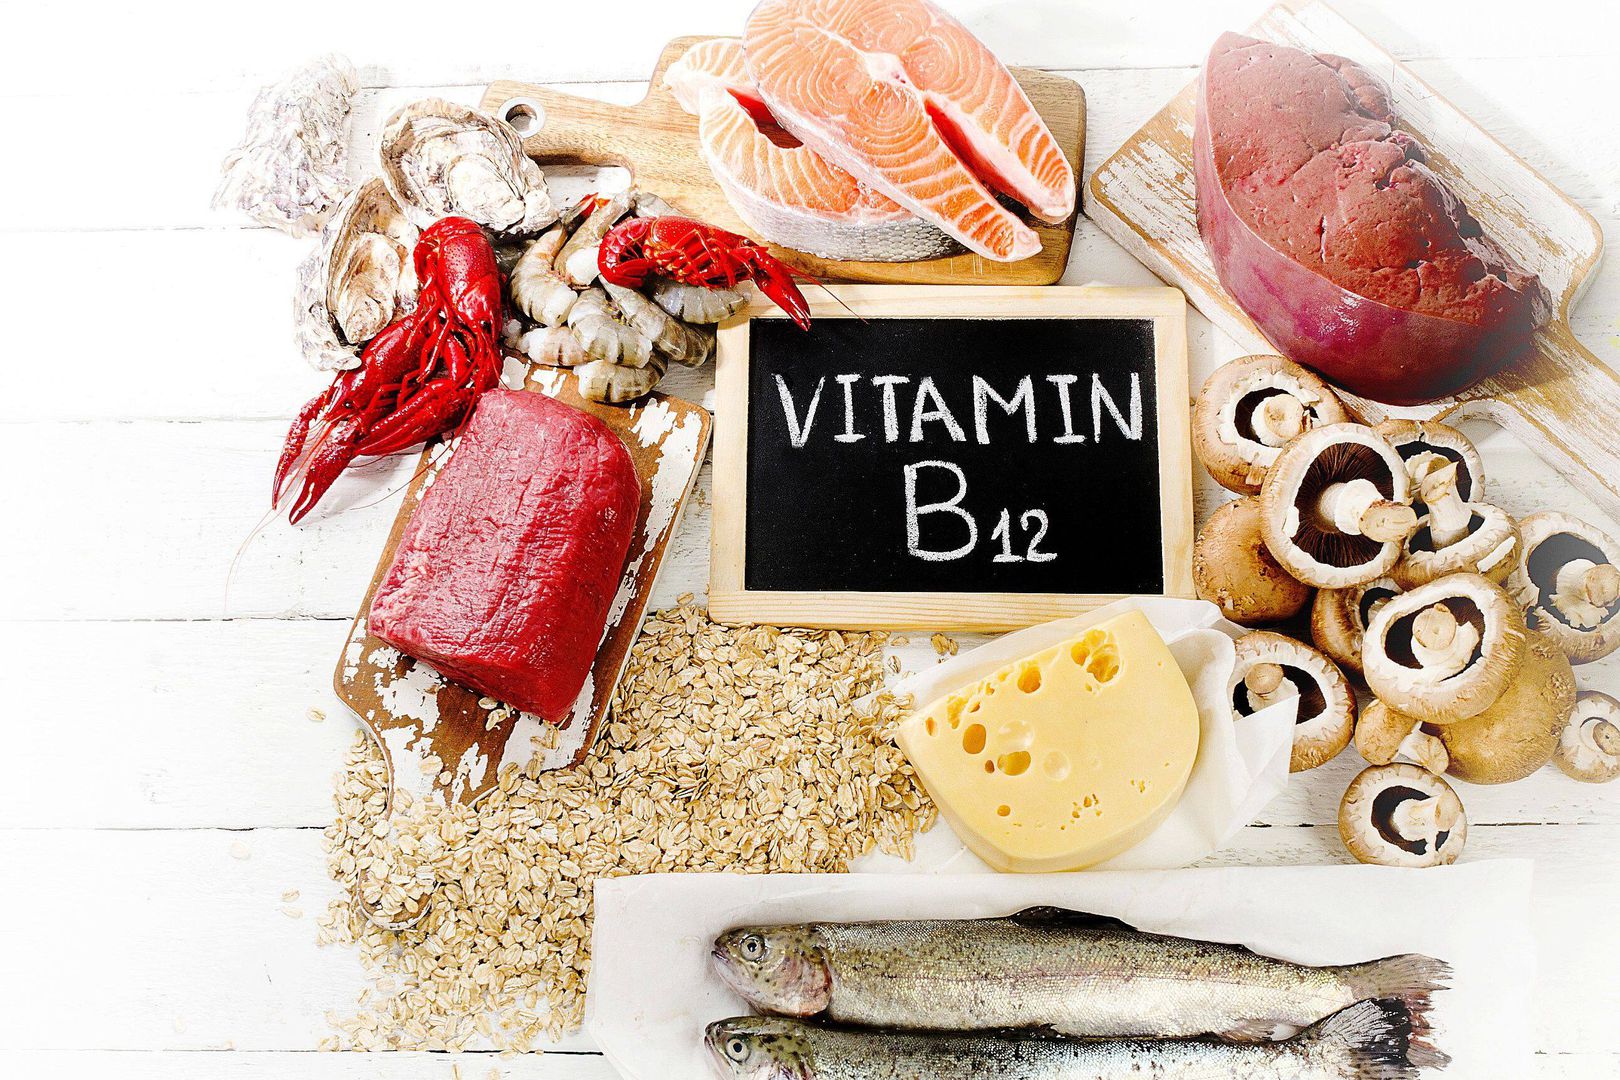 Vitamine B12 : Propriétés et fonctions